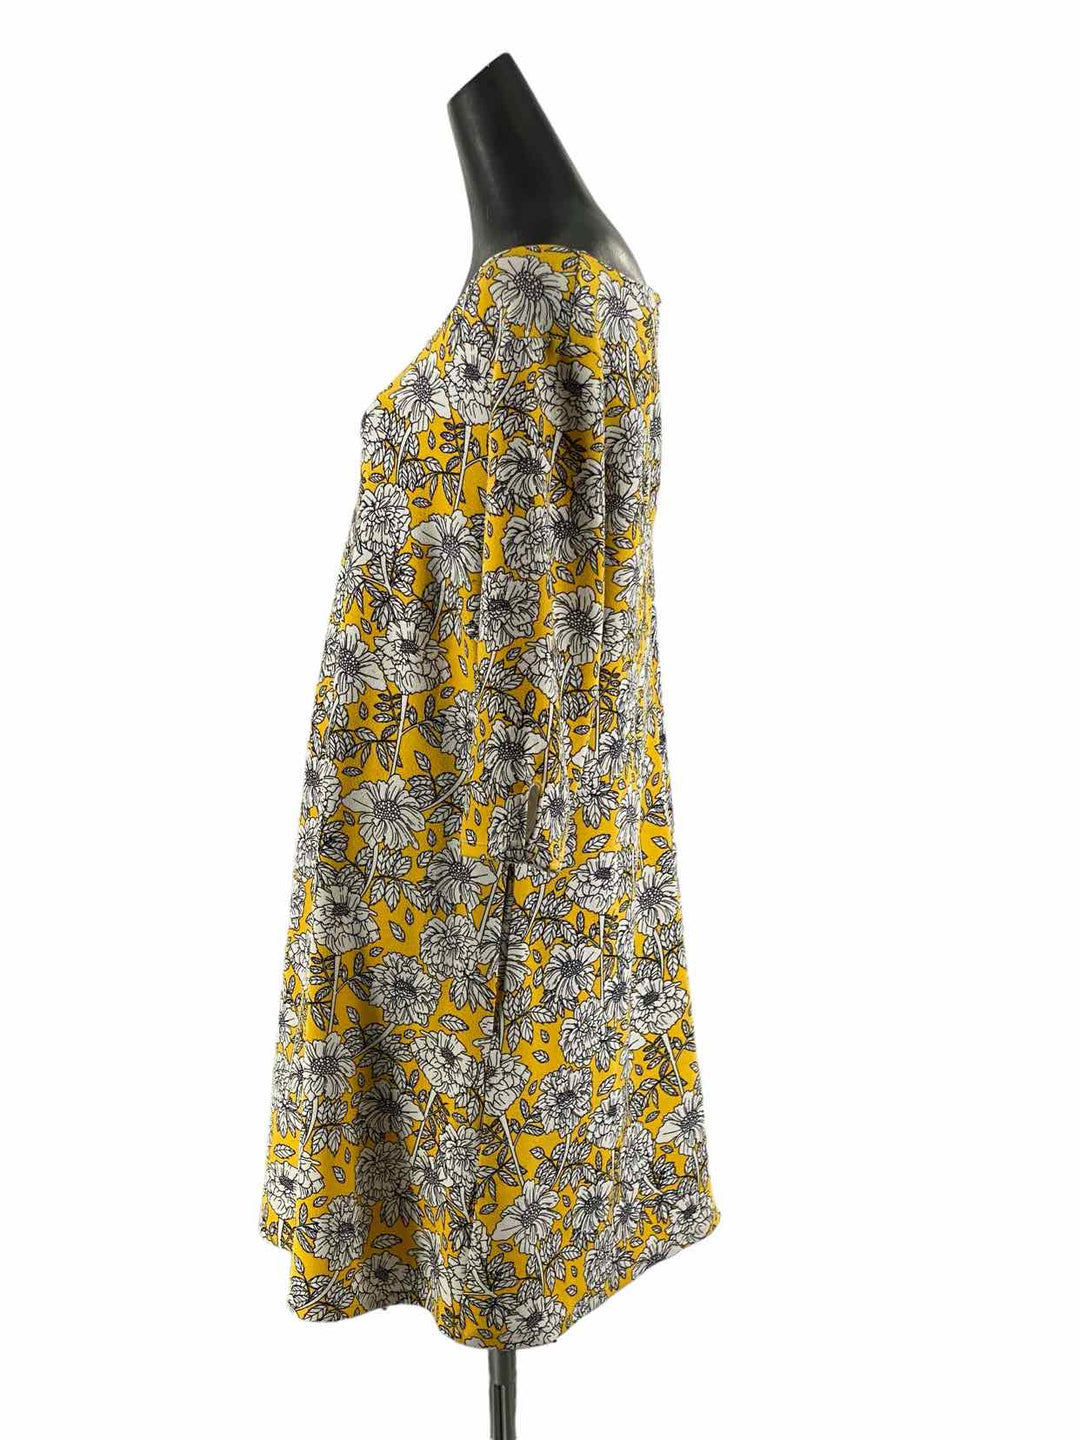 Smak Parlour Size 1X Yellow White Floral Dress